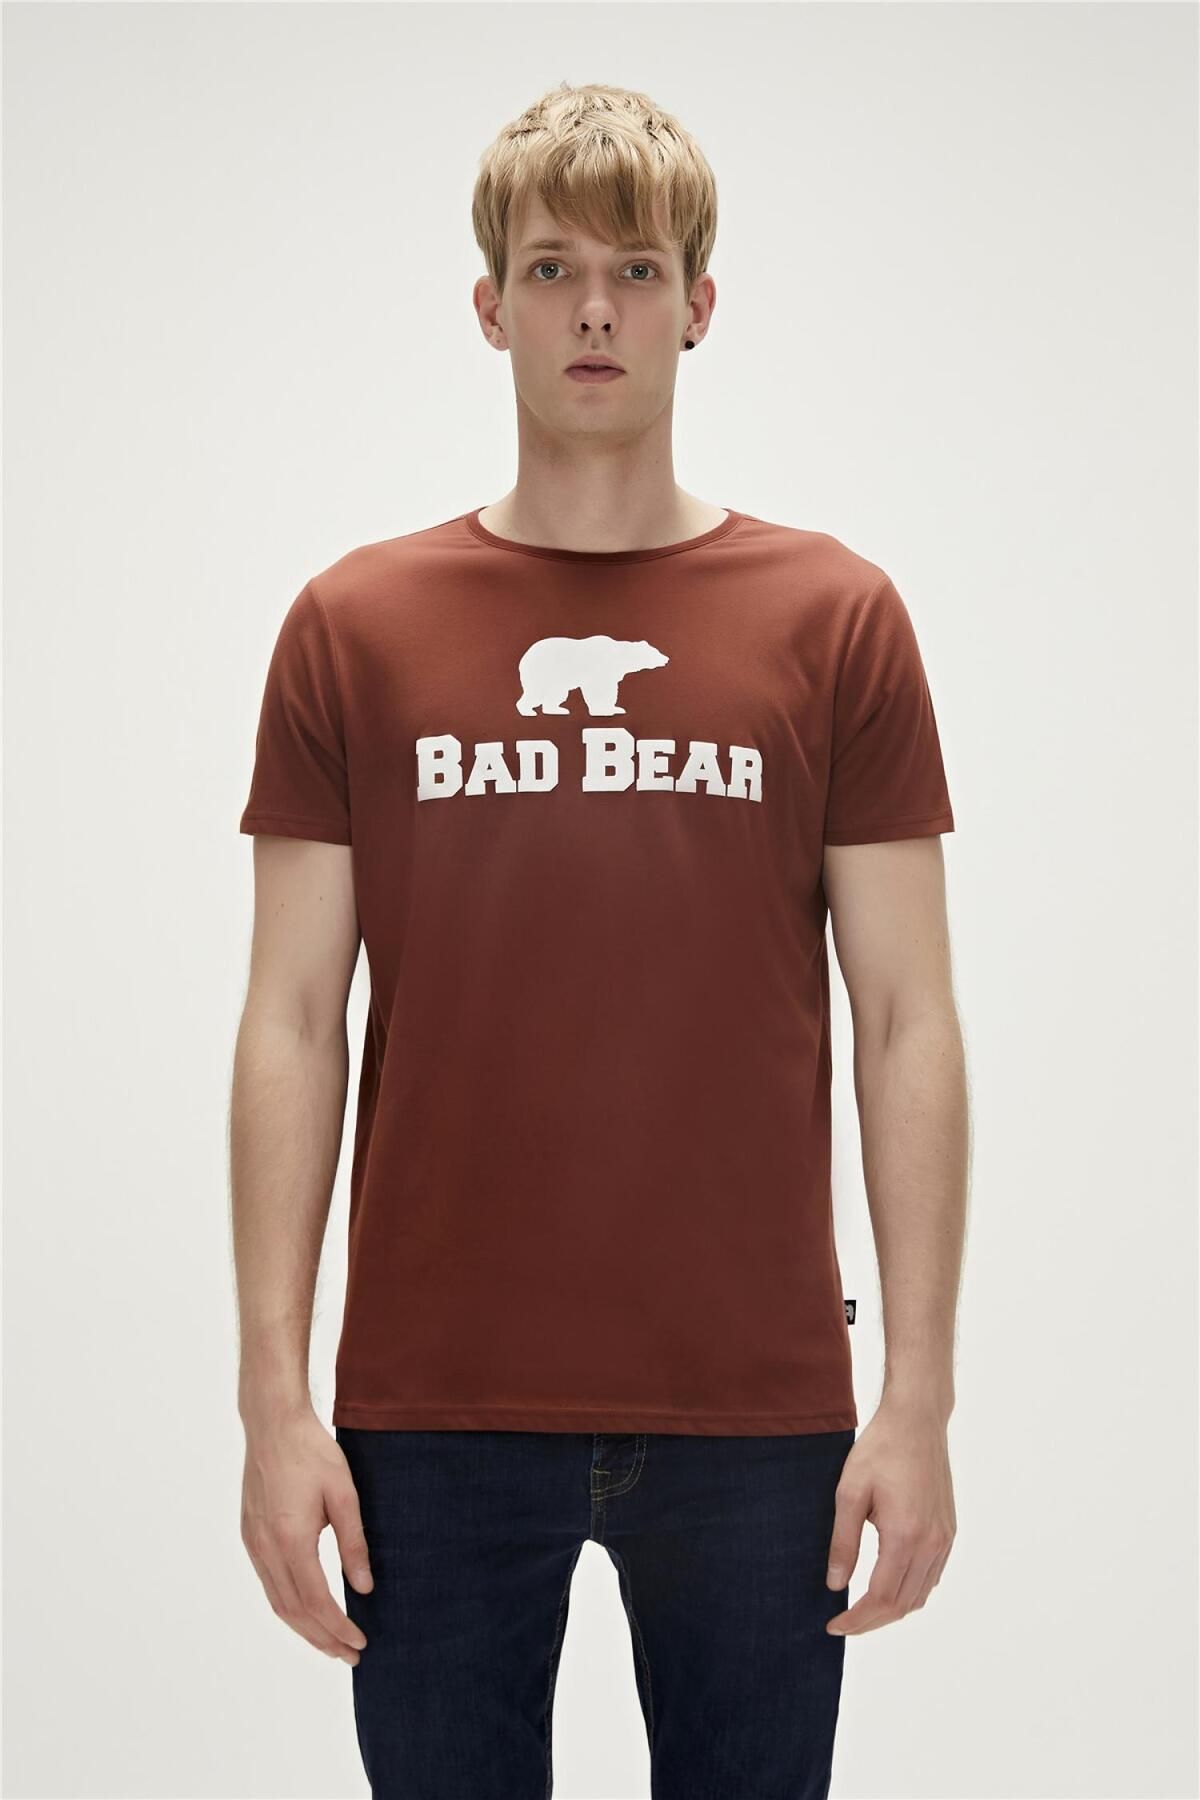 Bad Bear 19.01.07.002-23y Tee Erkek T-shirt